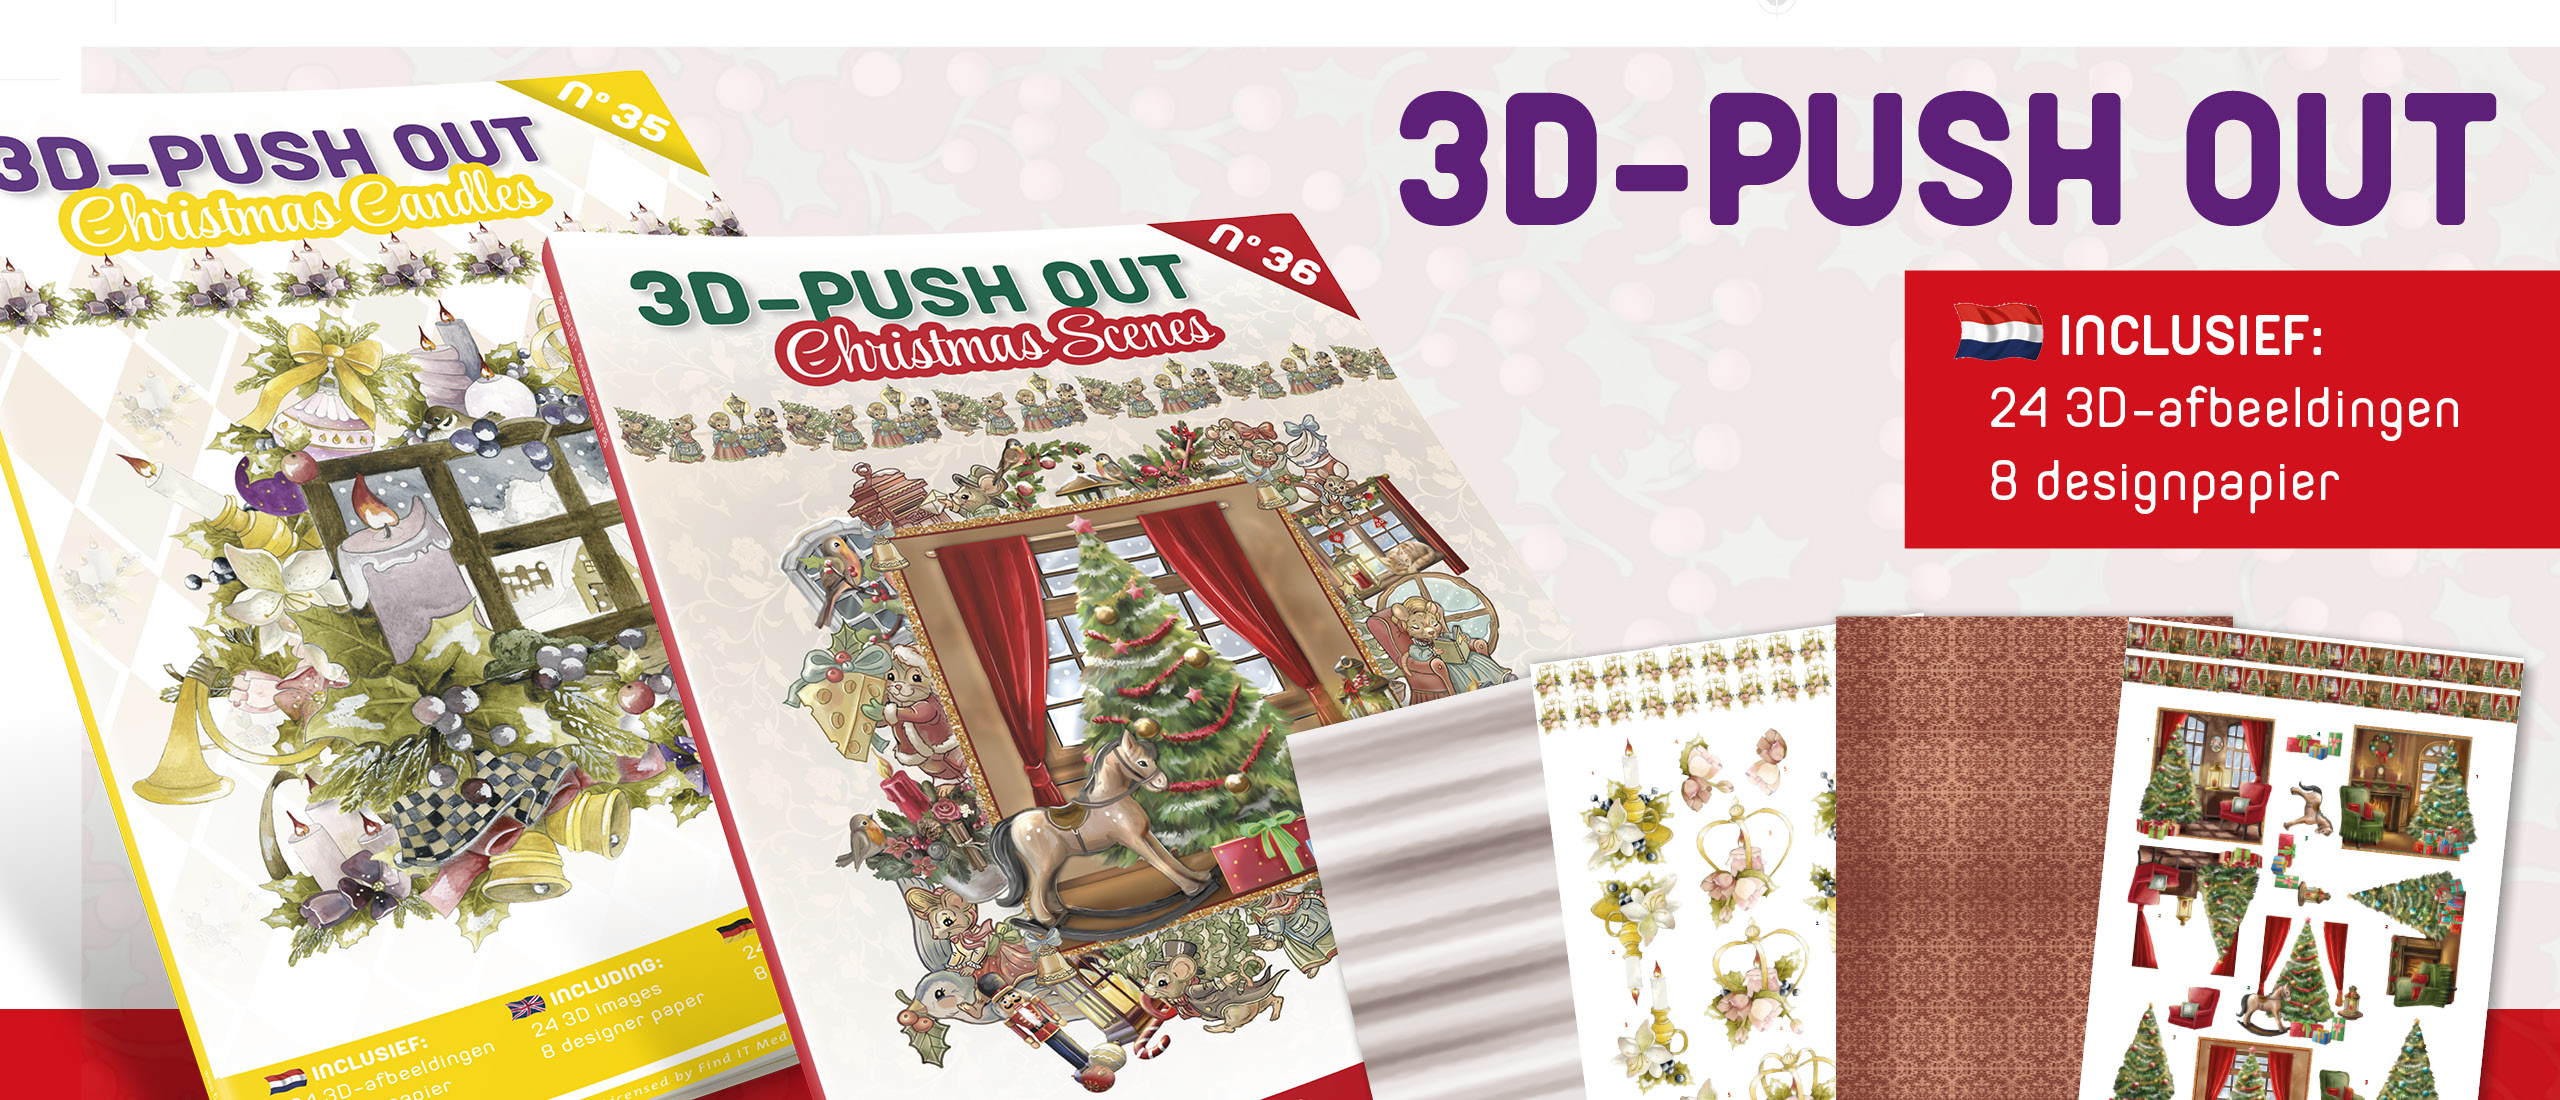 3D Push Out book 35-36: Christmas Candles en Christmas Scenes (3DPO10035-3DPO10036)